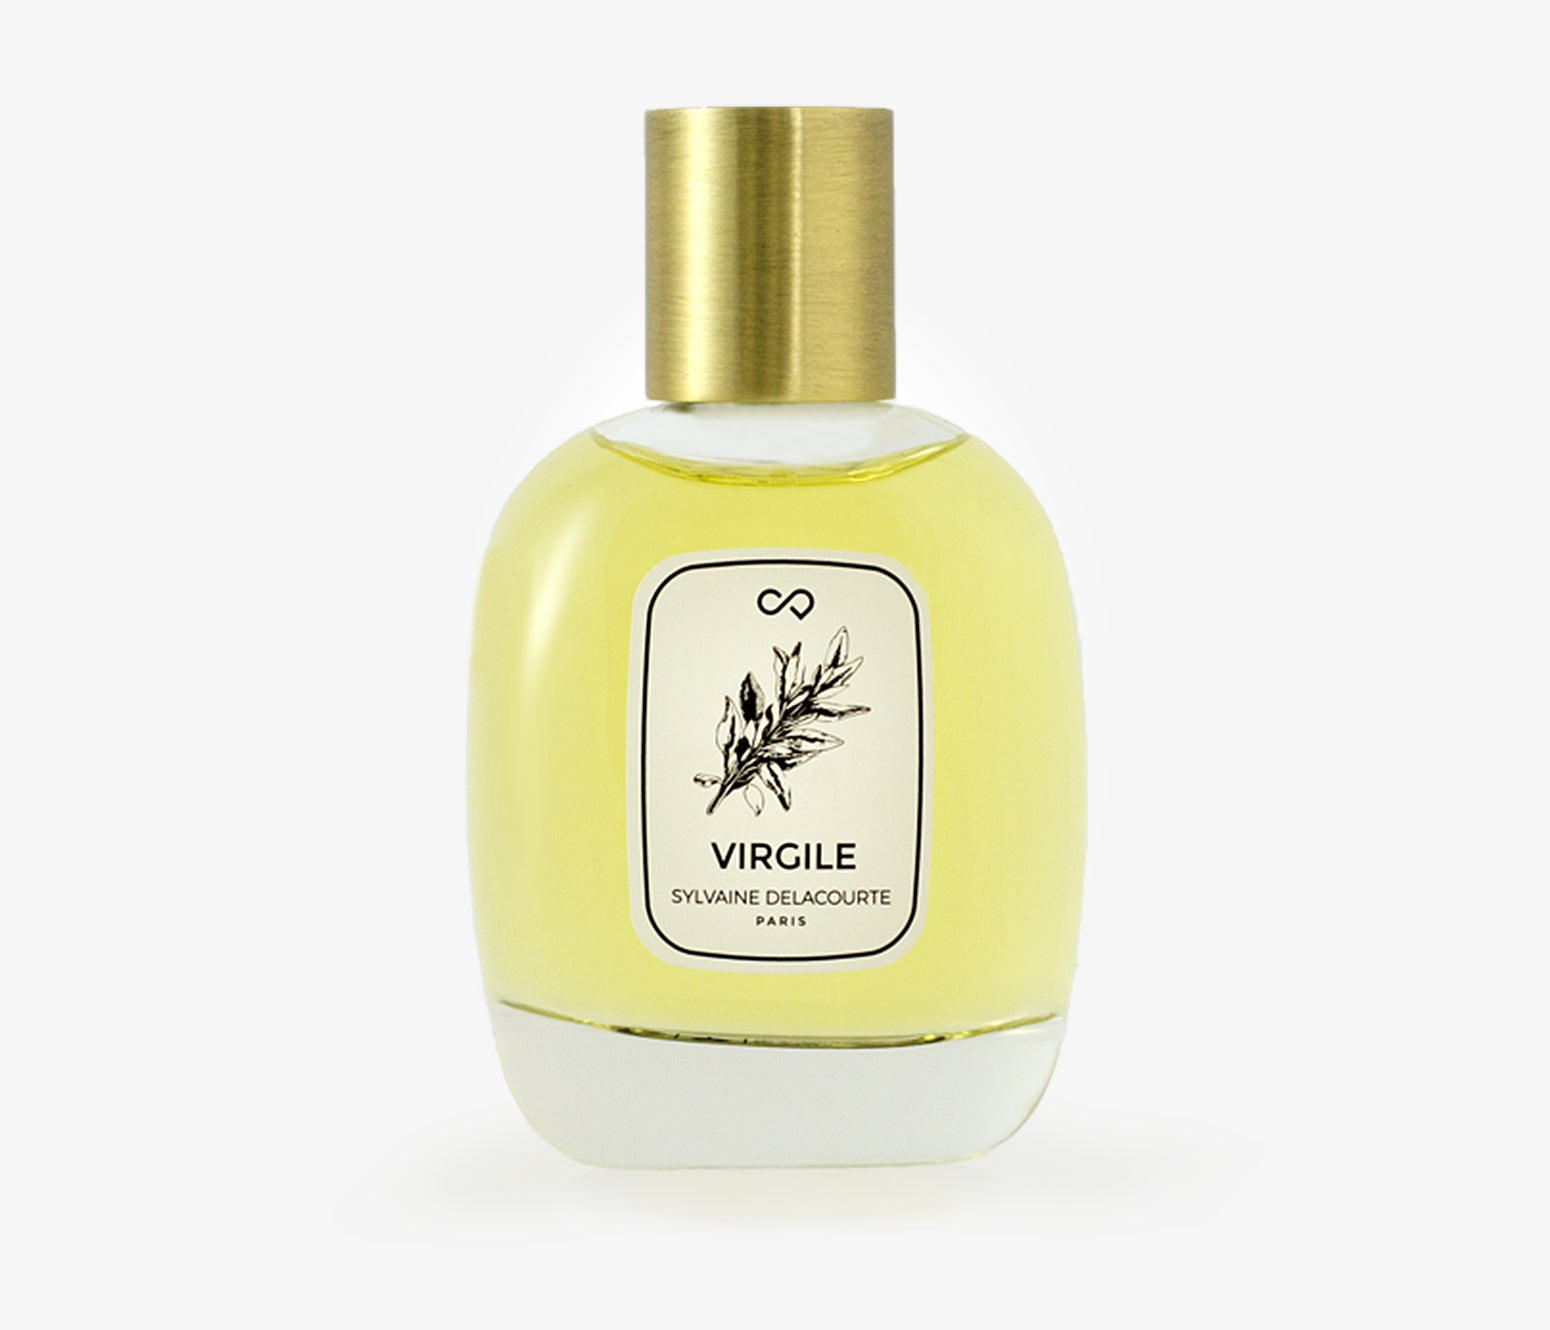 Sylvaine Delacourte - Virgile - 100ml - ZPW001 - product image - Fragrance - Les Senteurs